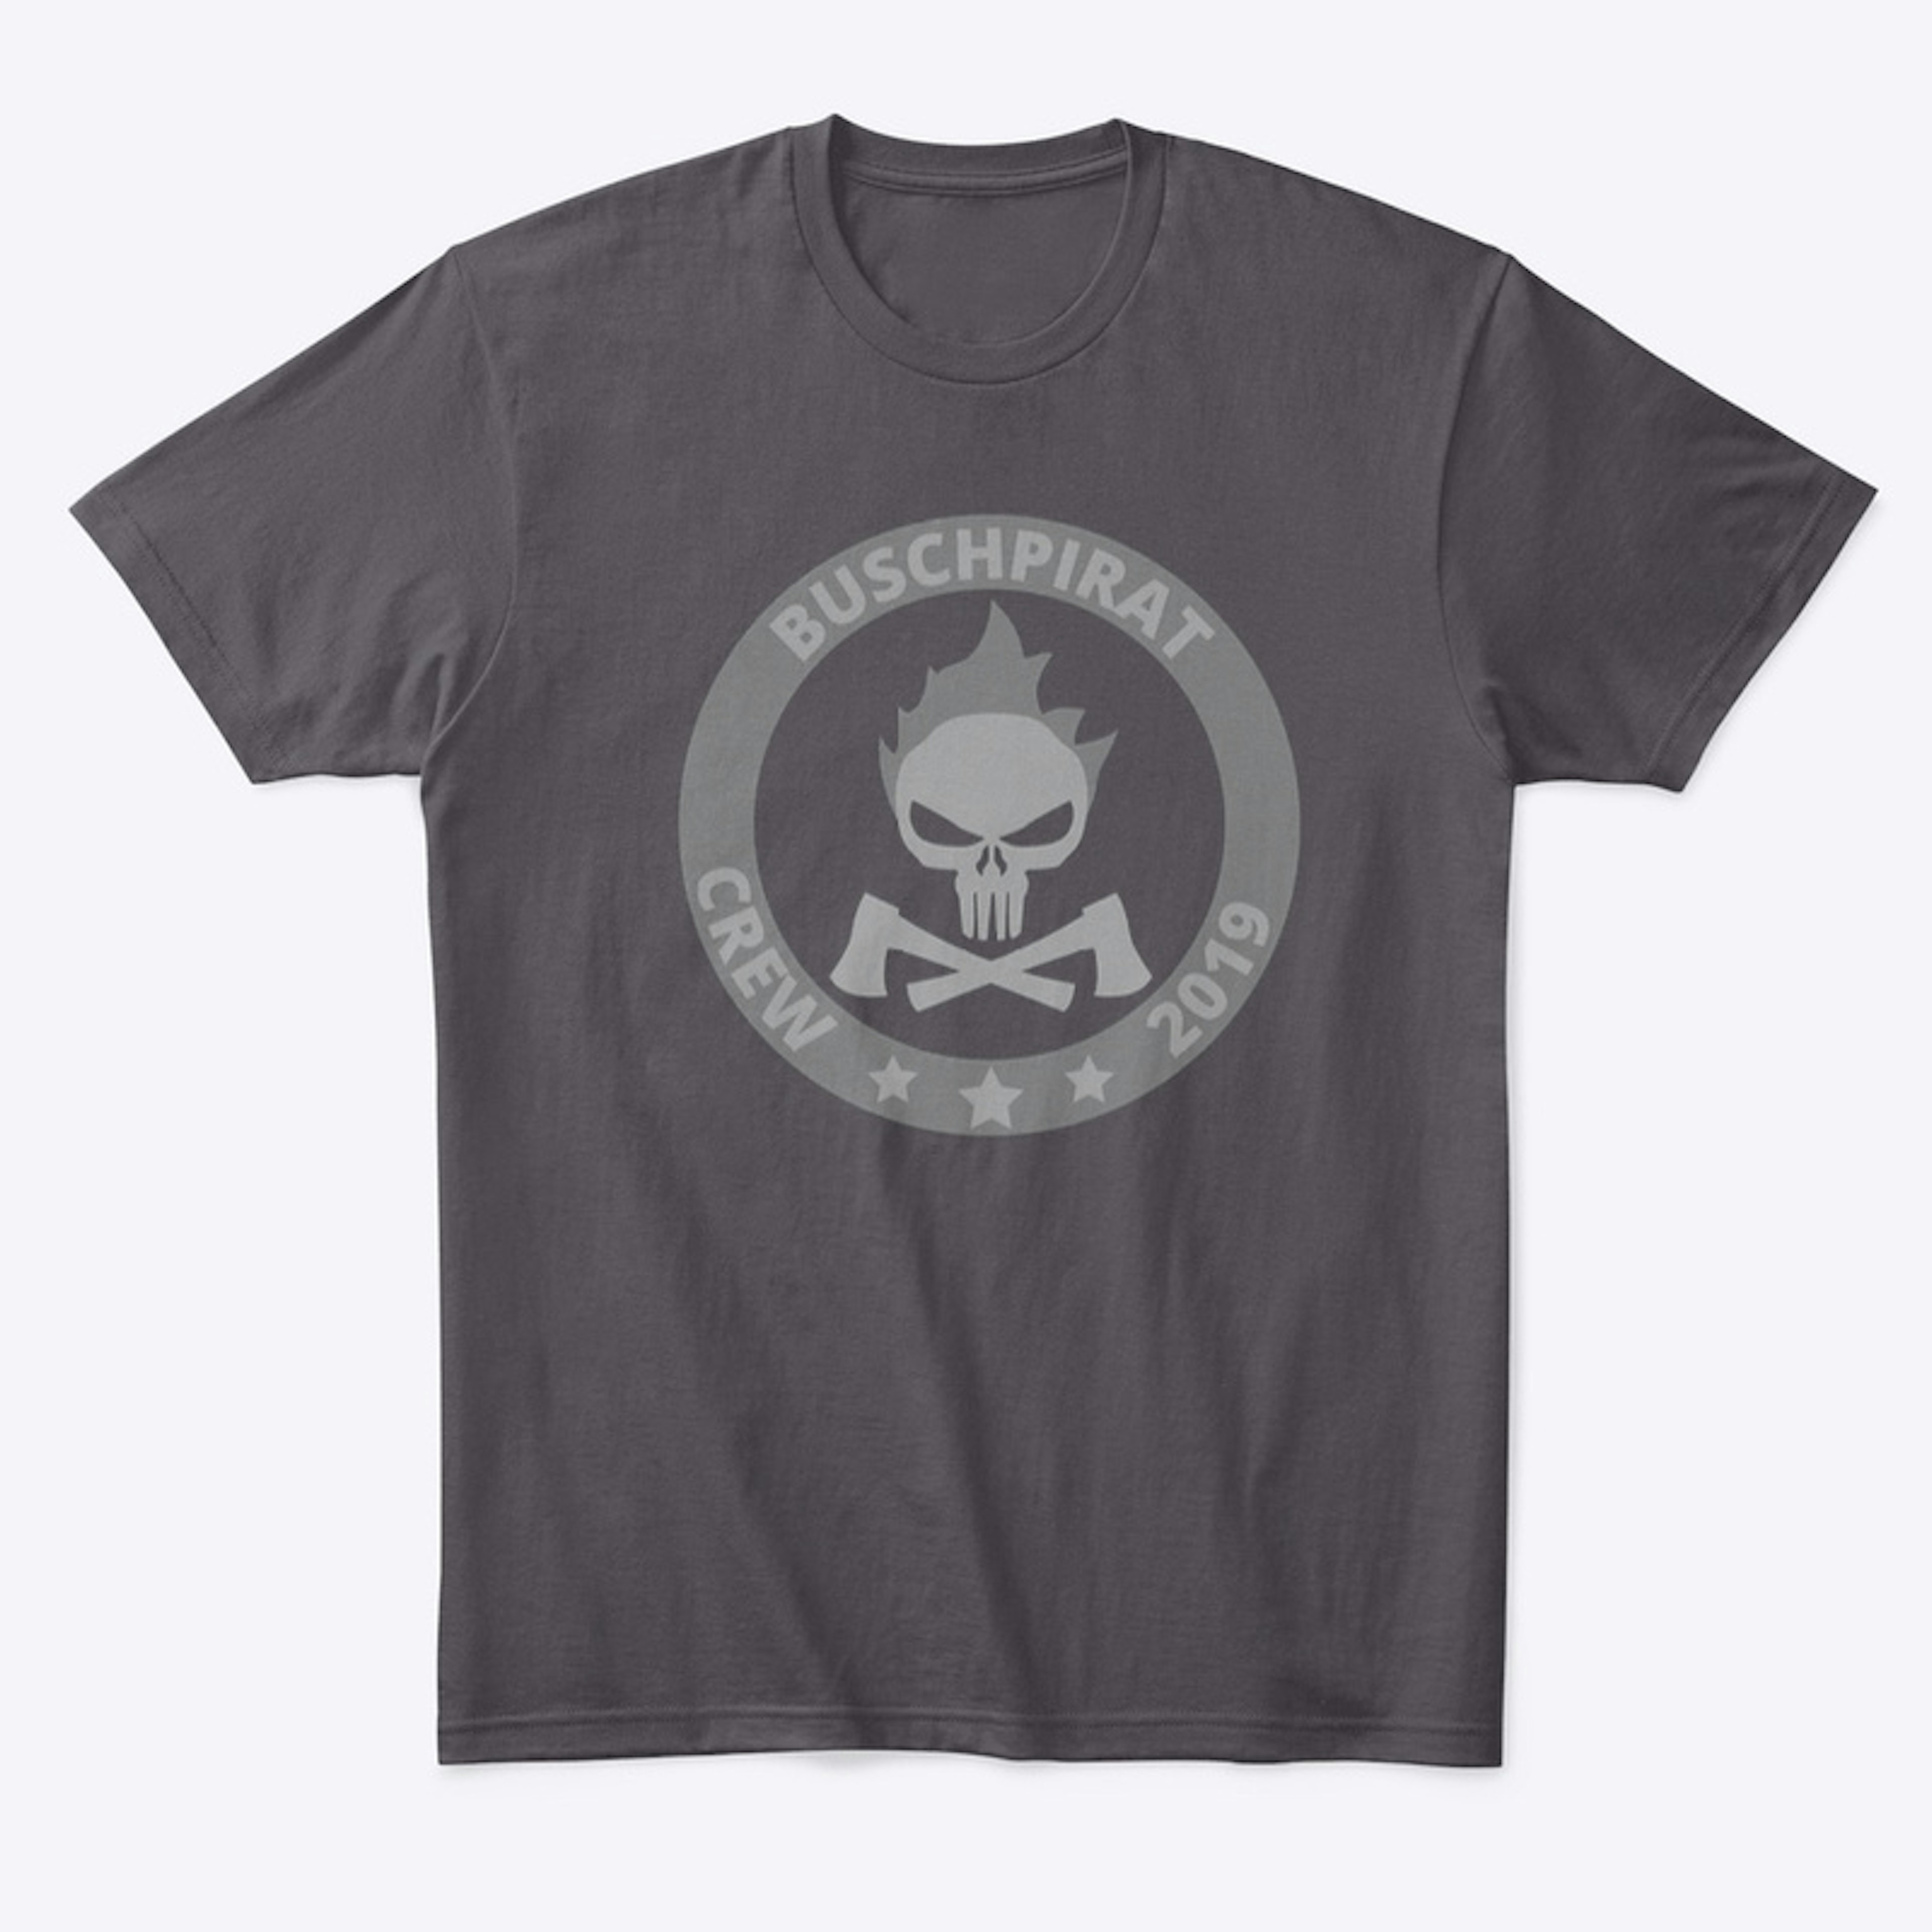 Buschpirat "Crew 2019.2" / T-Shirt